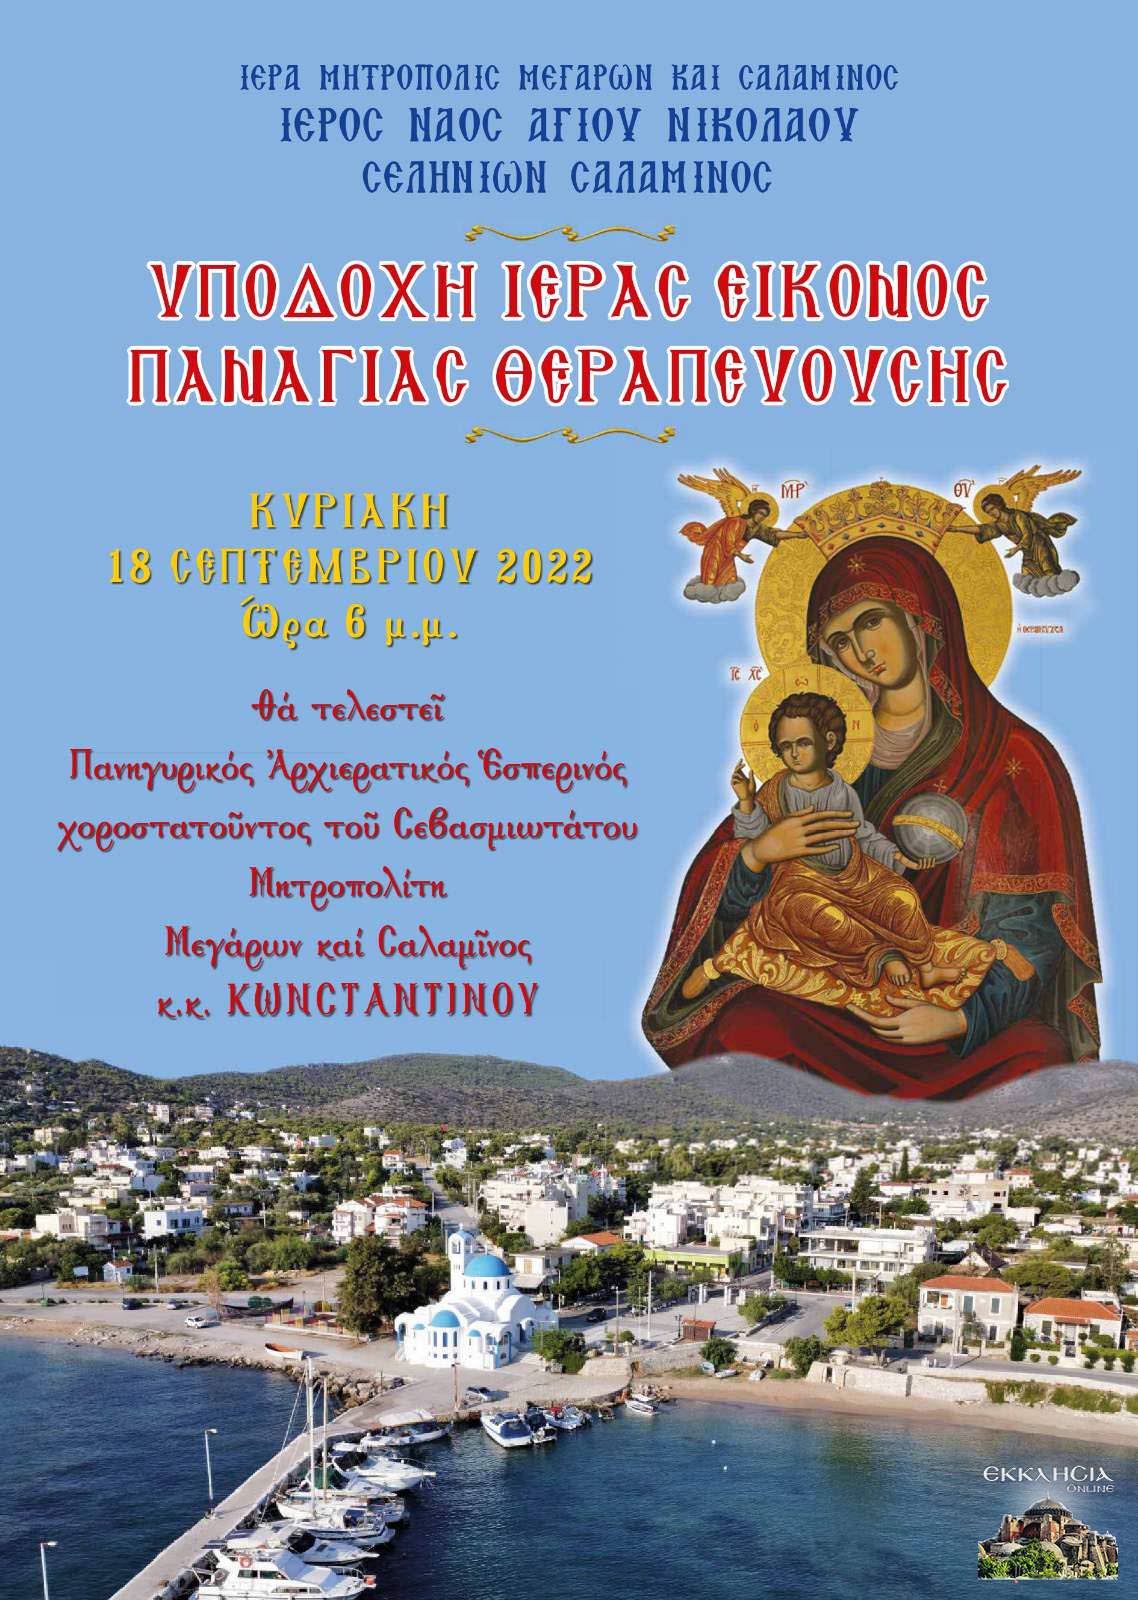 Υποδοχή της Παναγίας της Θεραπευούσης στον Ιερό Ναό Αγίου Νικολάου Σεληνίων Σαλαμίνος αφίσα